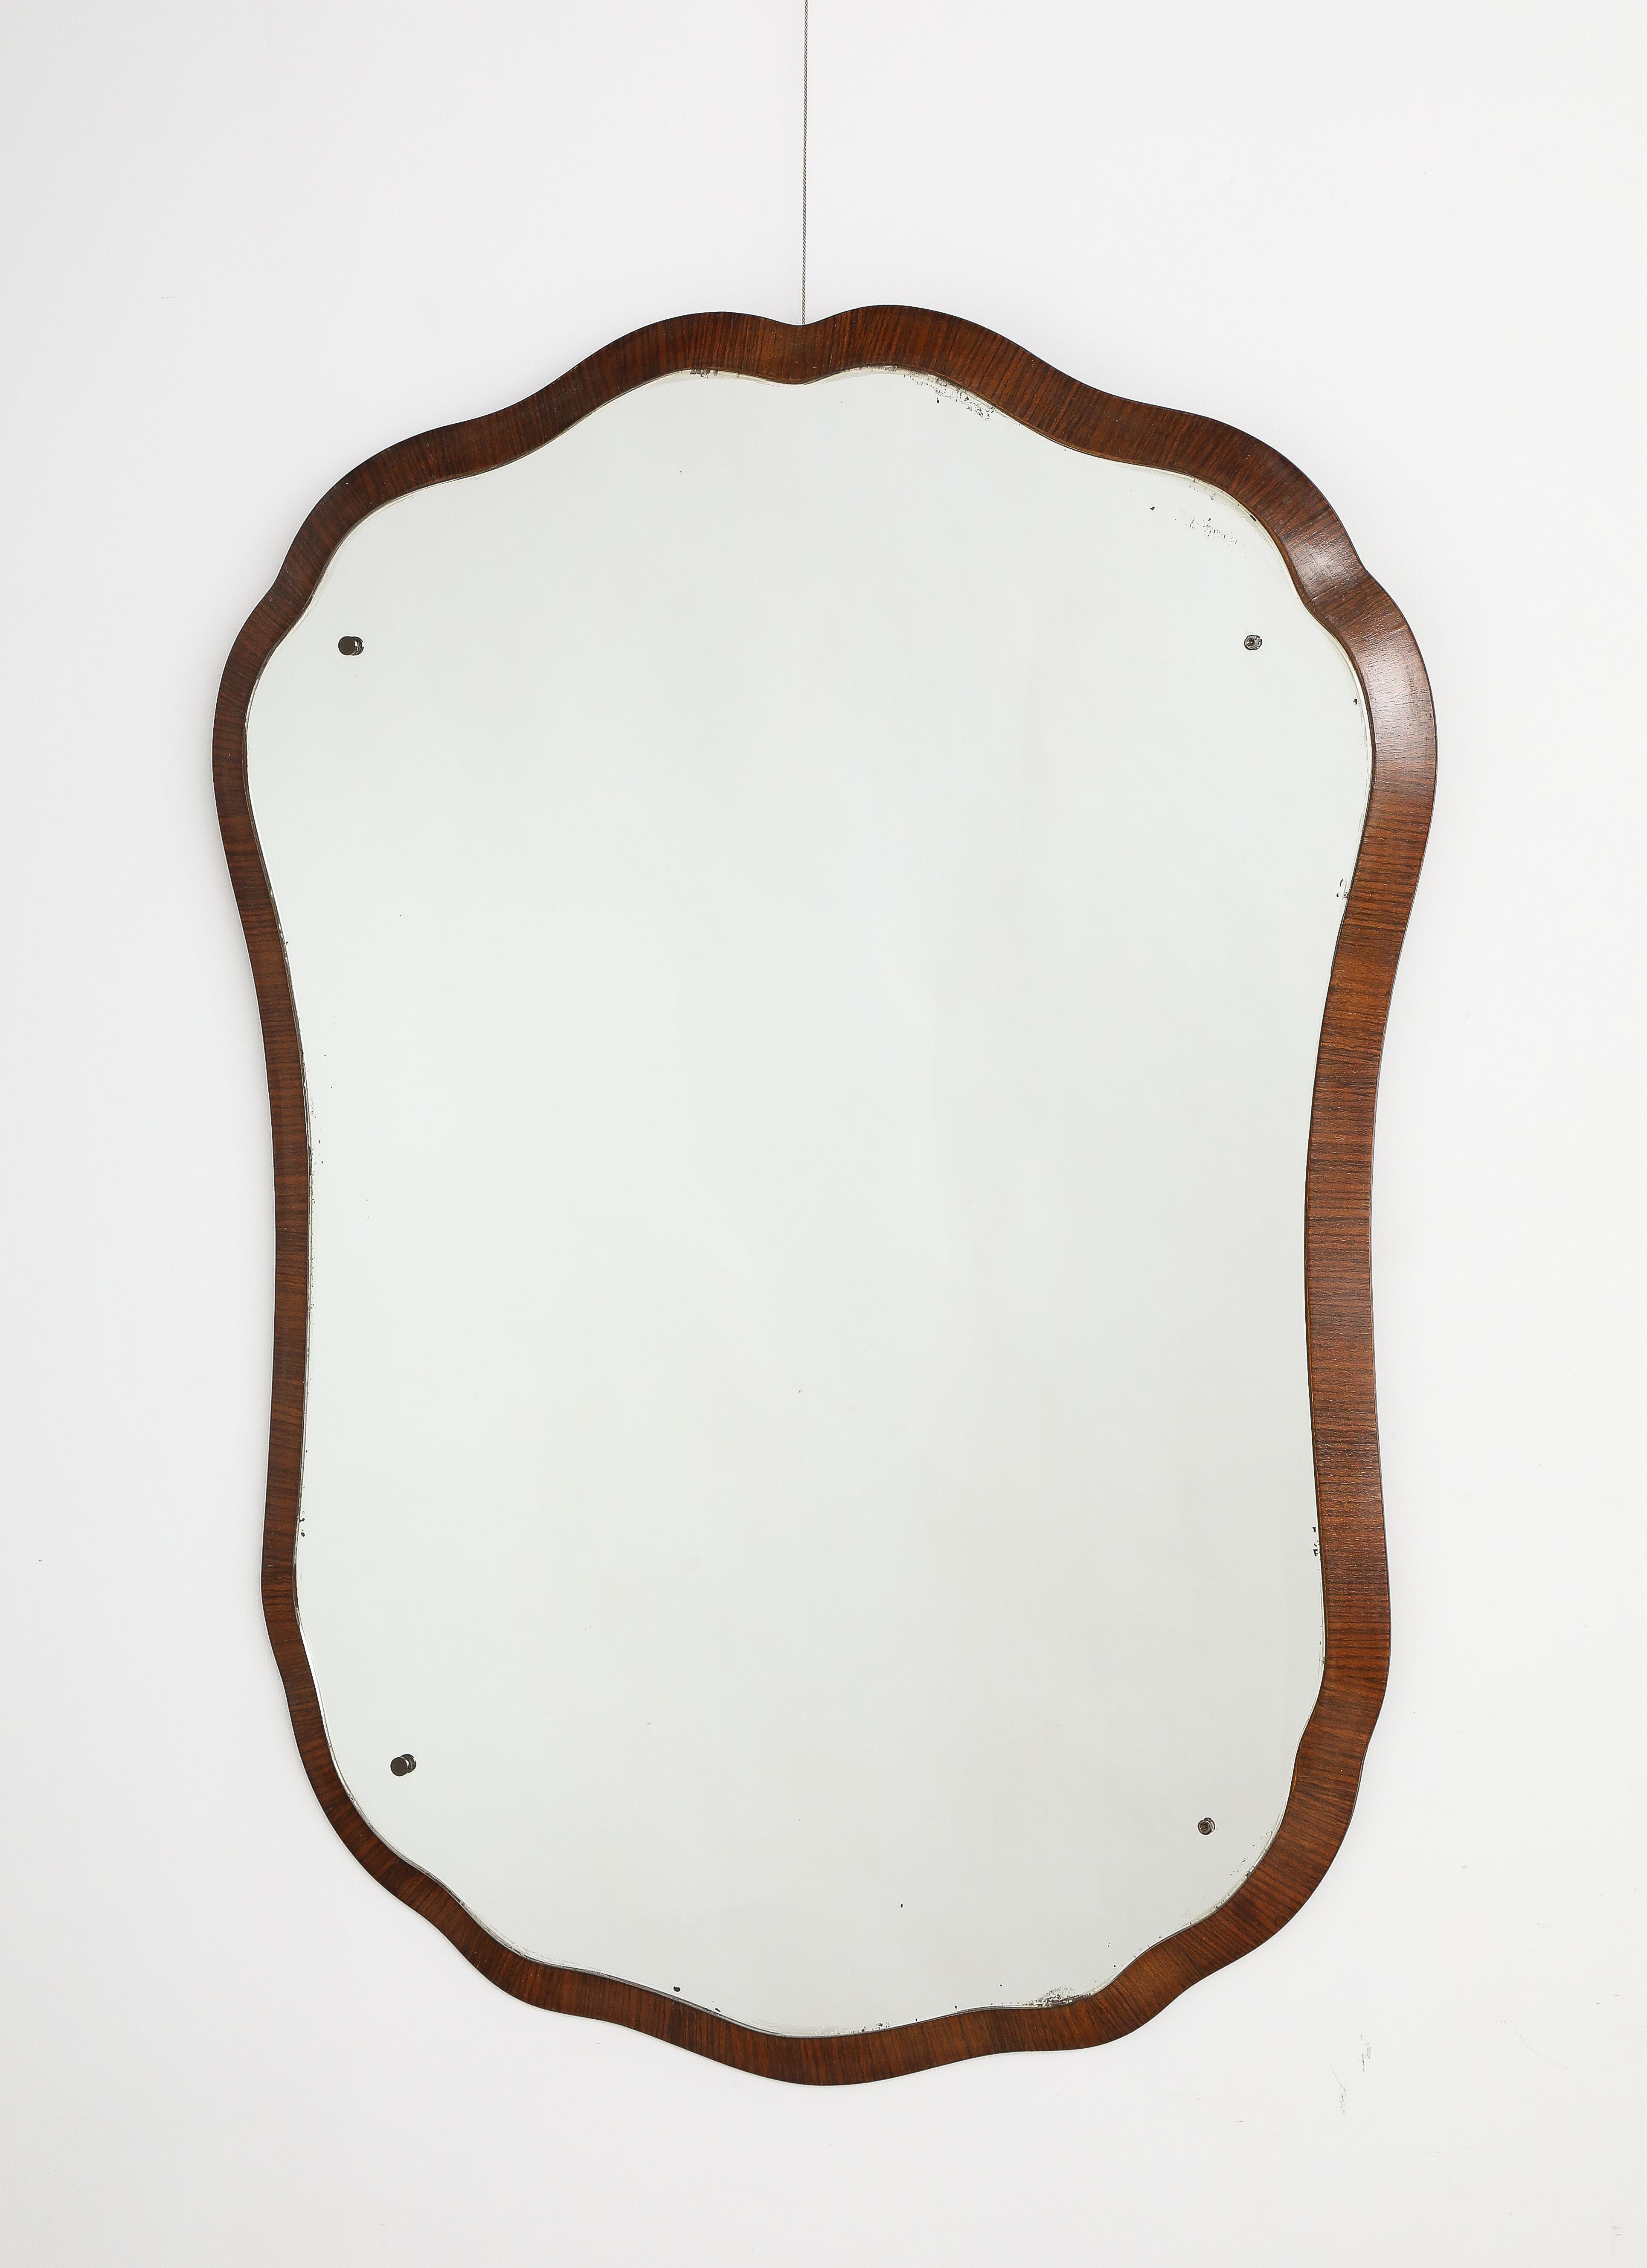 Miroir en bois de palissandre italien de grande taille, unique et élégant, en forme de cartouche.  Le cadre moulé en bois de palissandre supporte la plaque de verre originale qui suit la forme du cadre extérieur en bois.  Une pièce étonnante dont la